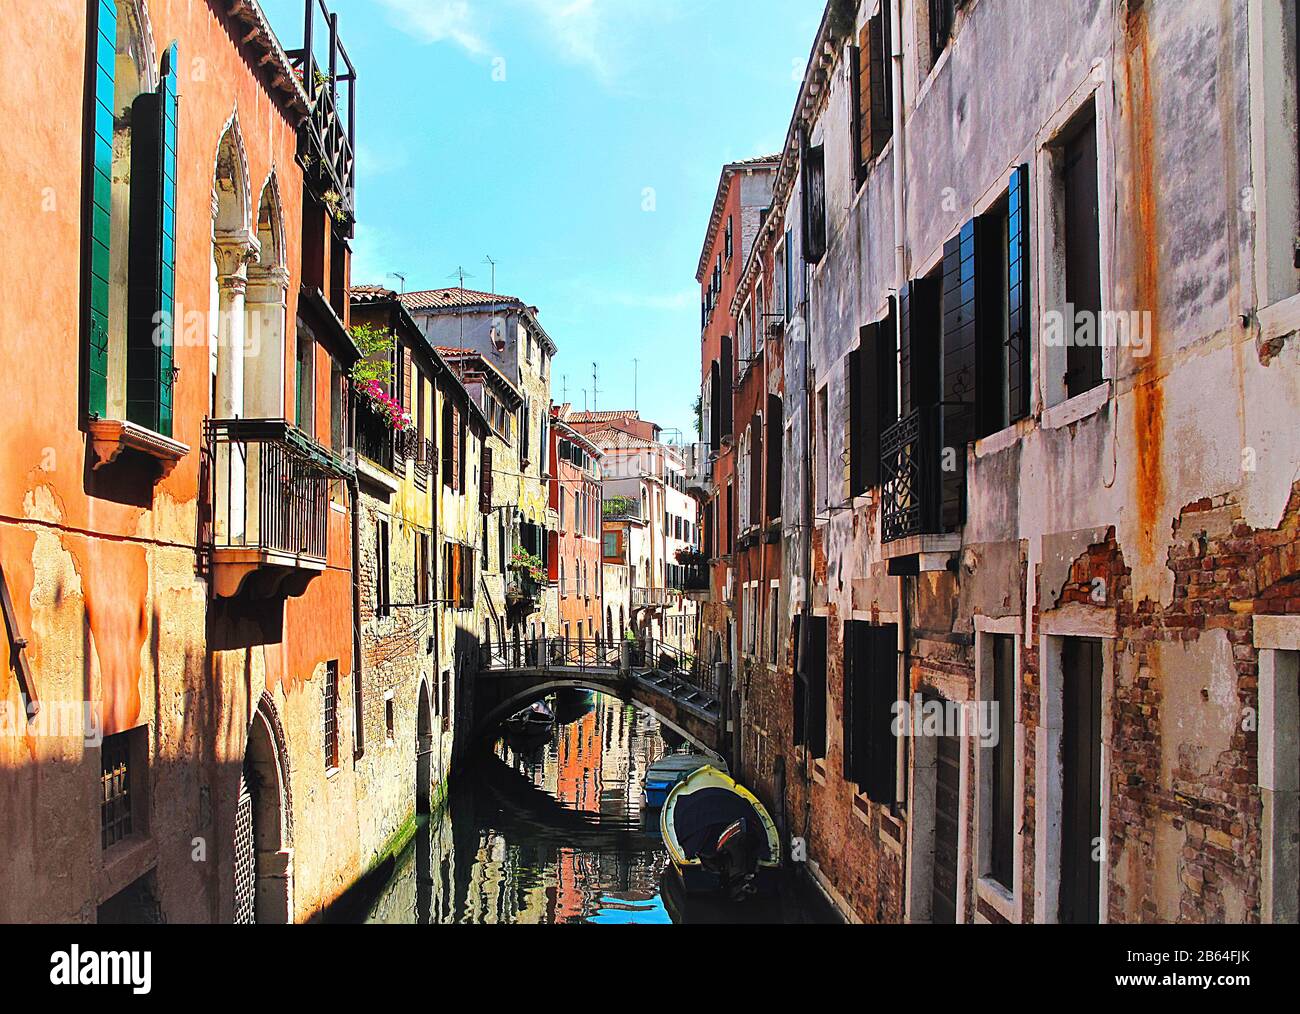 Pareti di mattoni rossi di colore arancio della stretta via dei canali, Venezia Italia Foto Stock